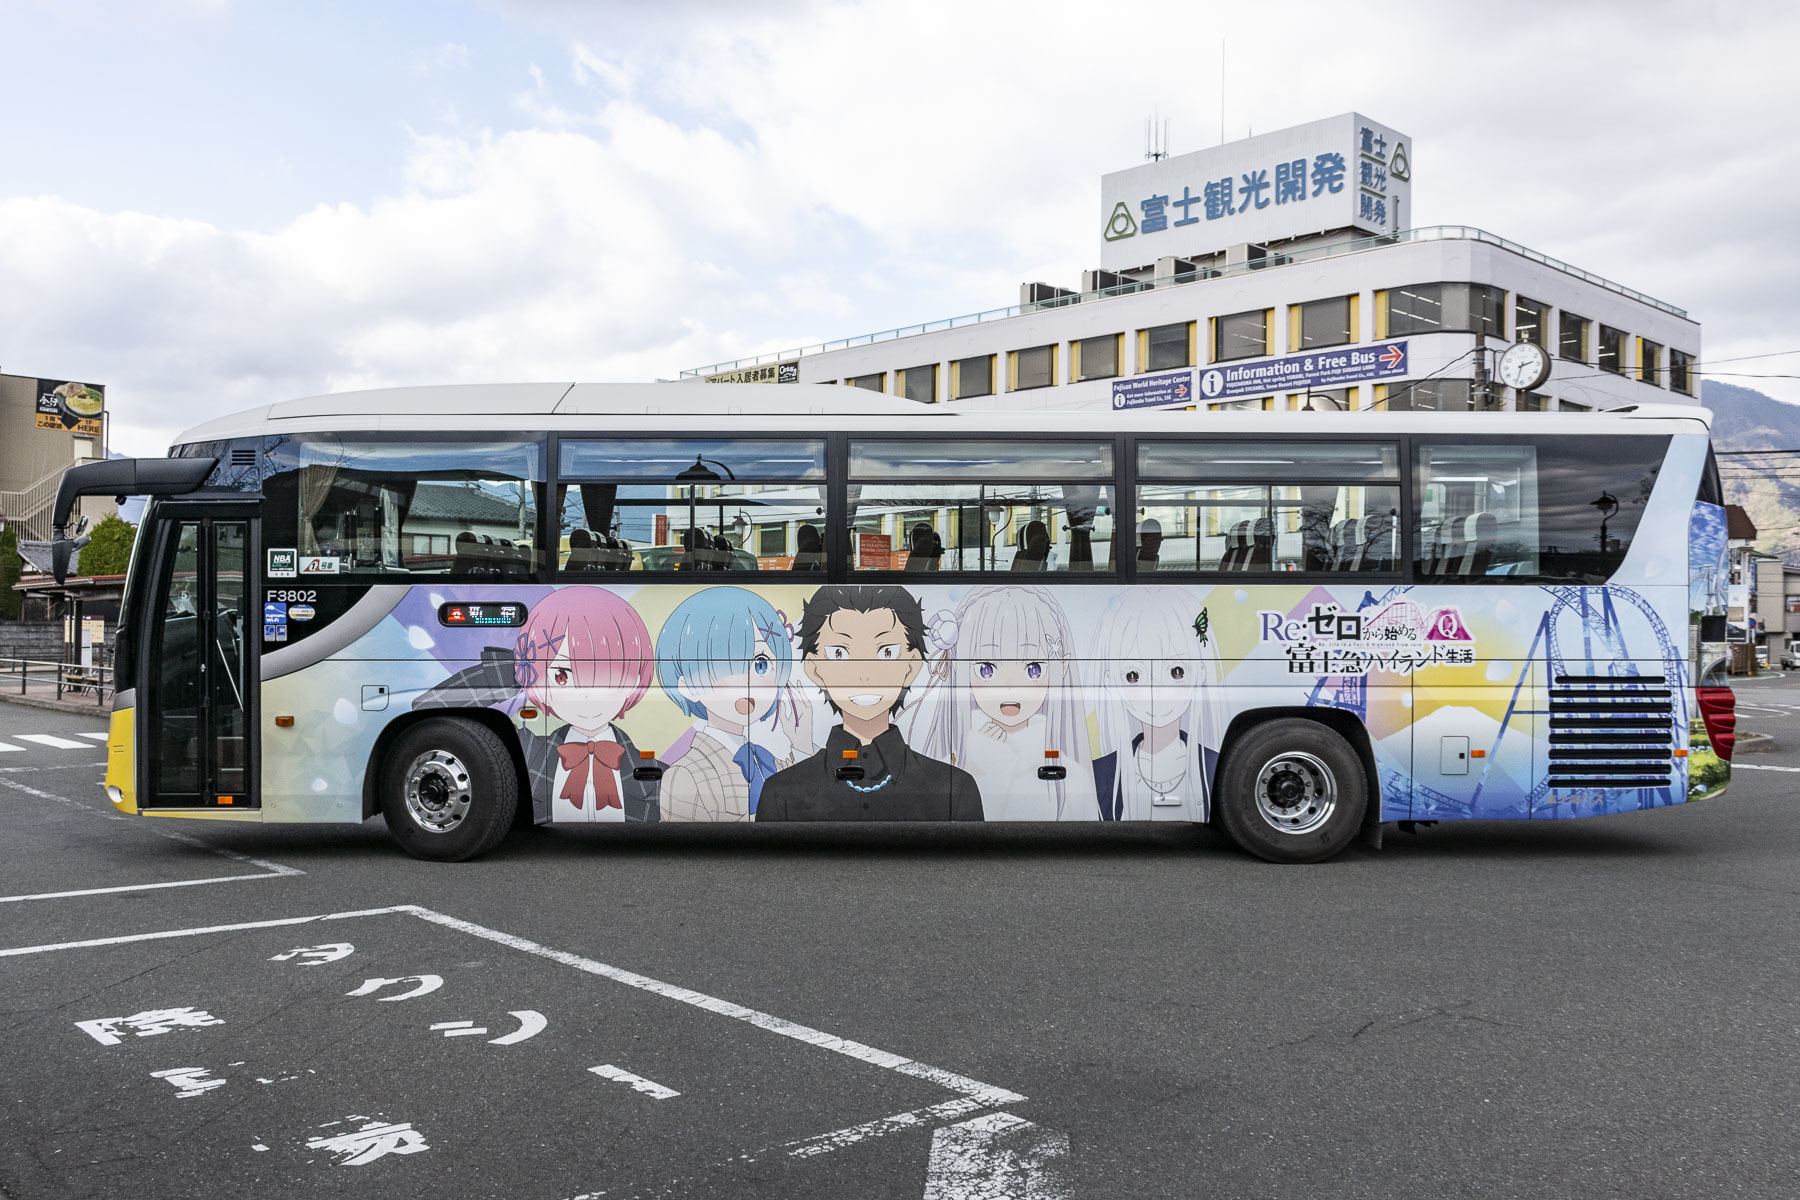 富士急バス / Re:ゼロから始める富士急ハイランド生活ラッピングバス_d0226909_13081799.jpg